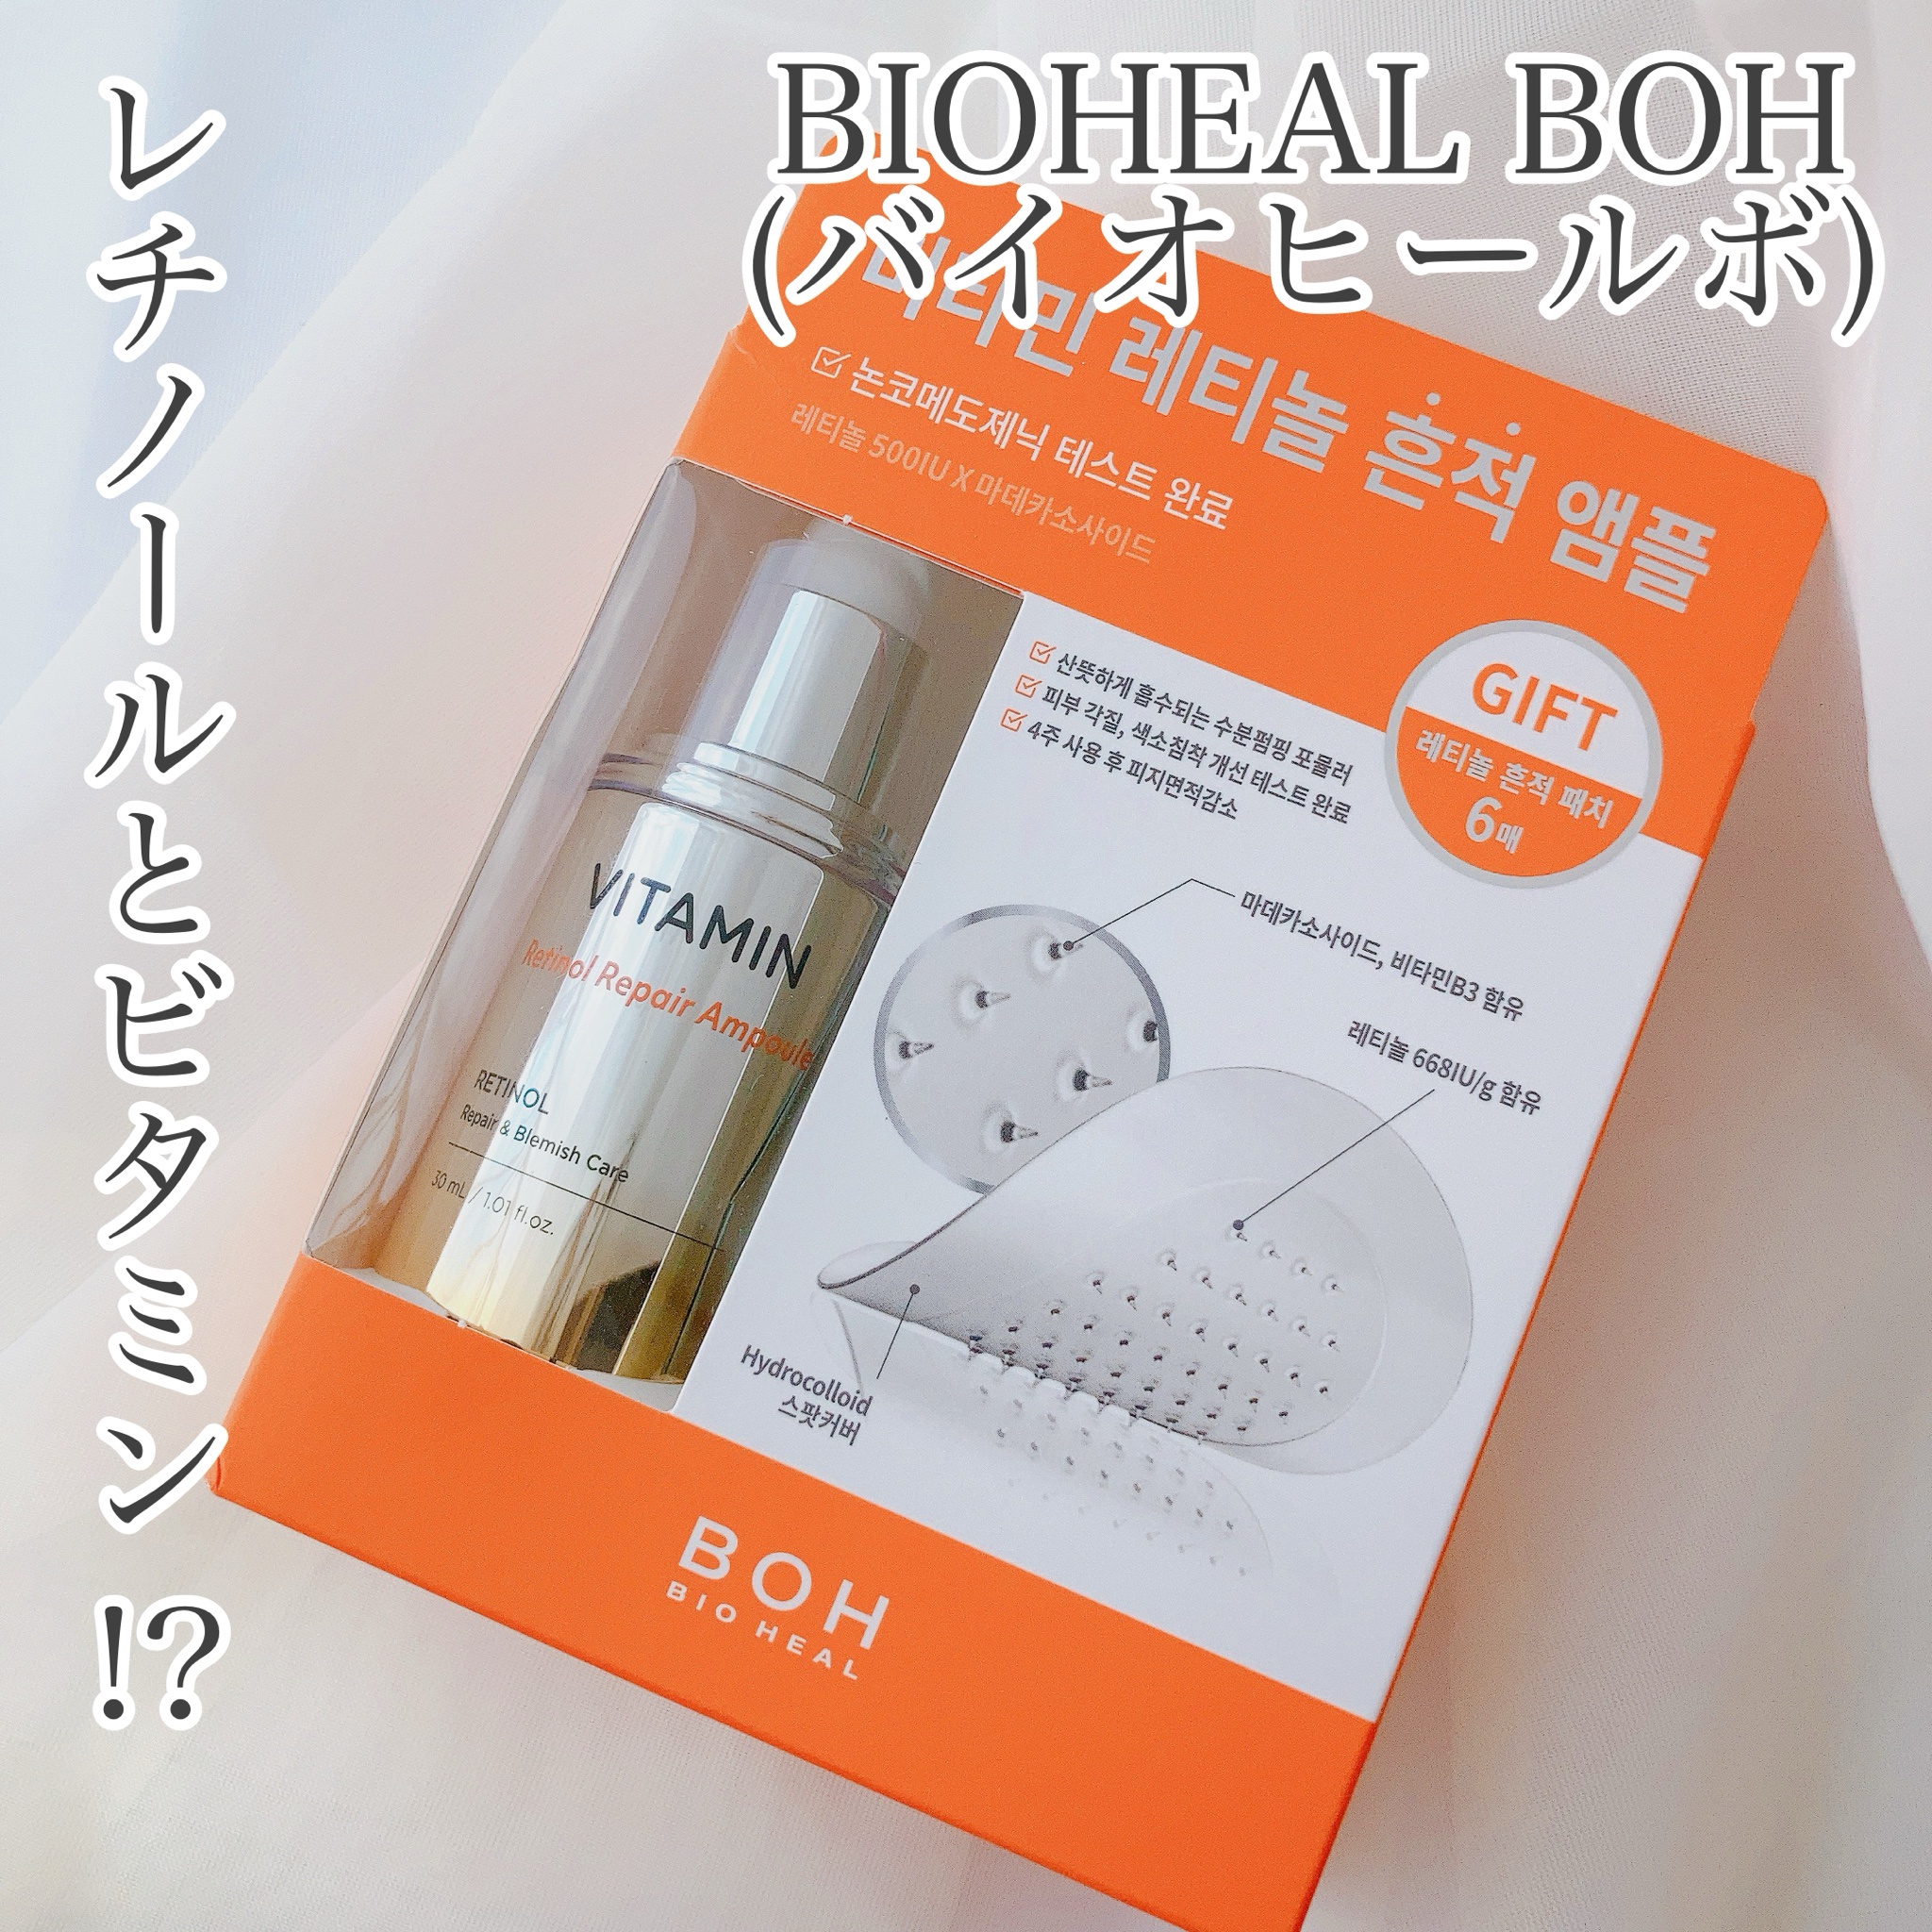 BIOHEAL BOH / ビタミンレチノールリペアアンプル 30mlの公式商品情報